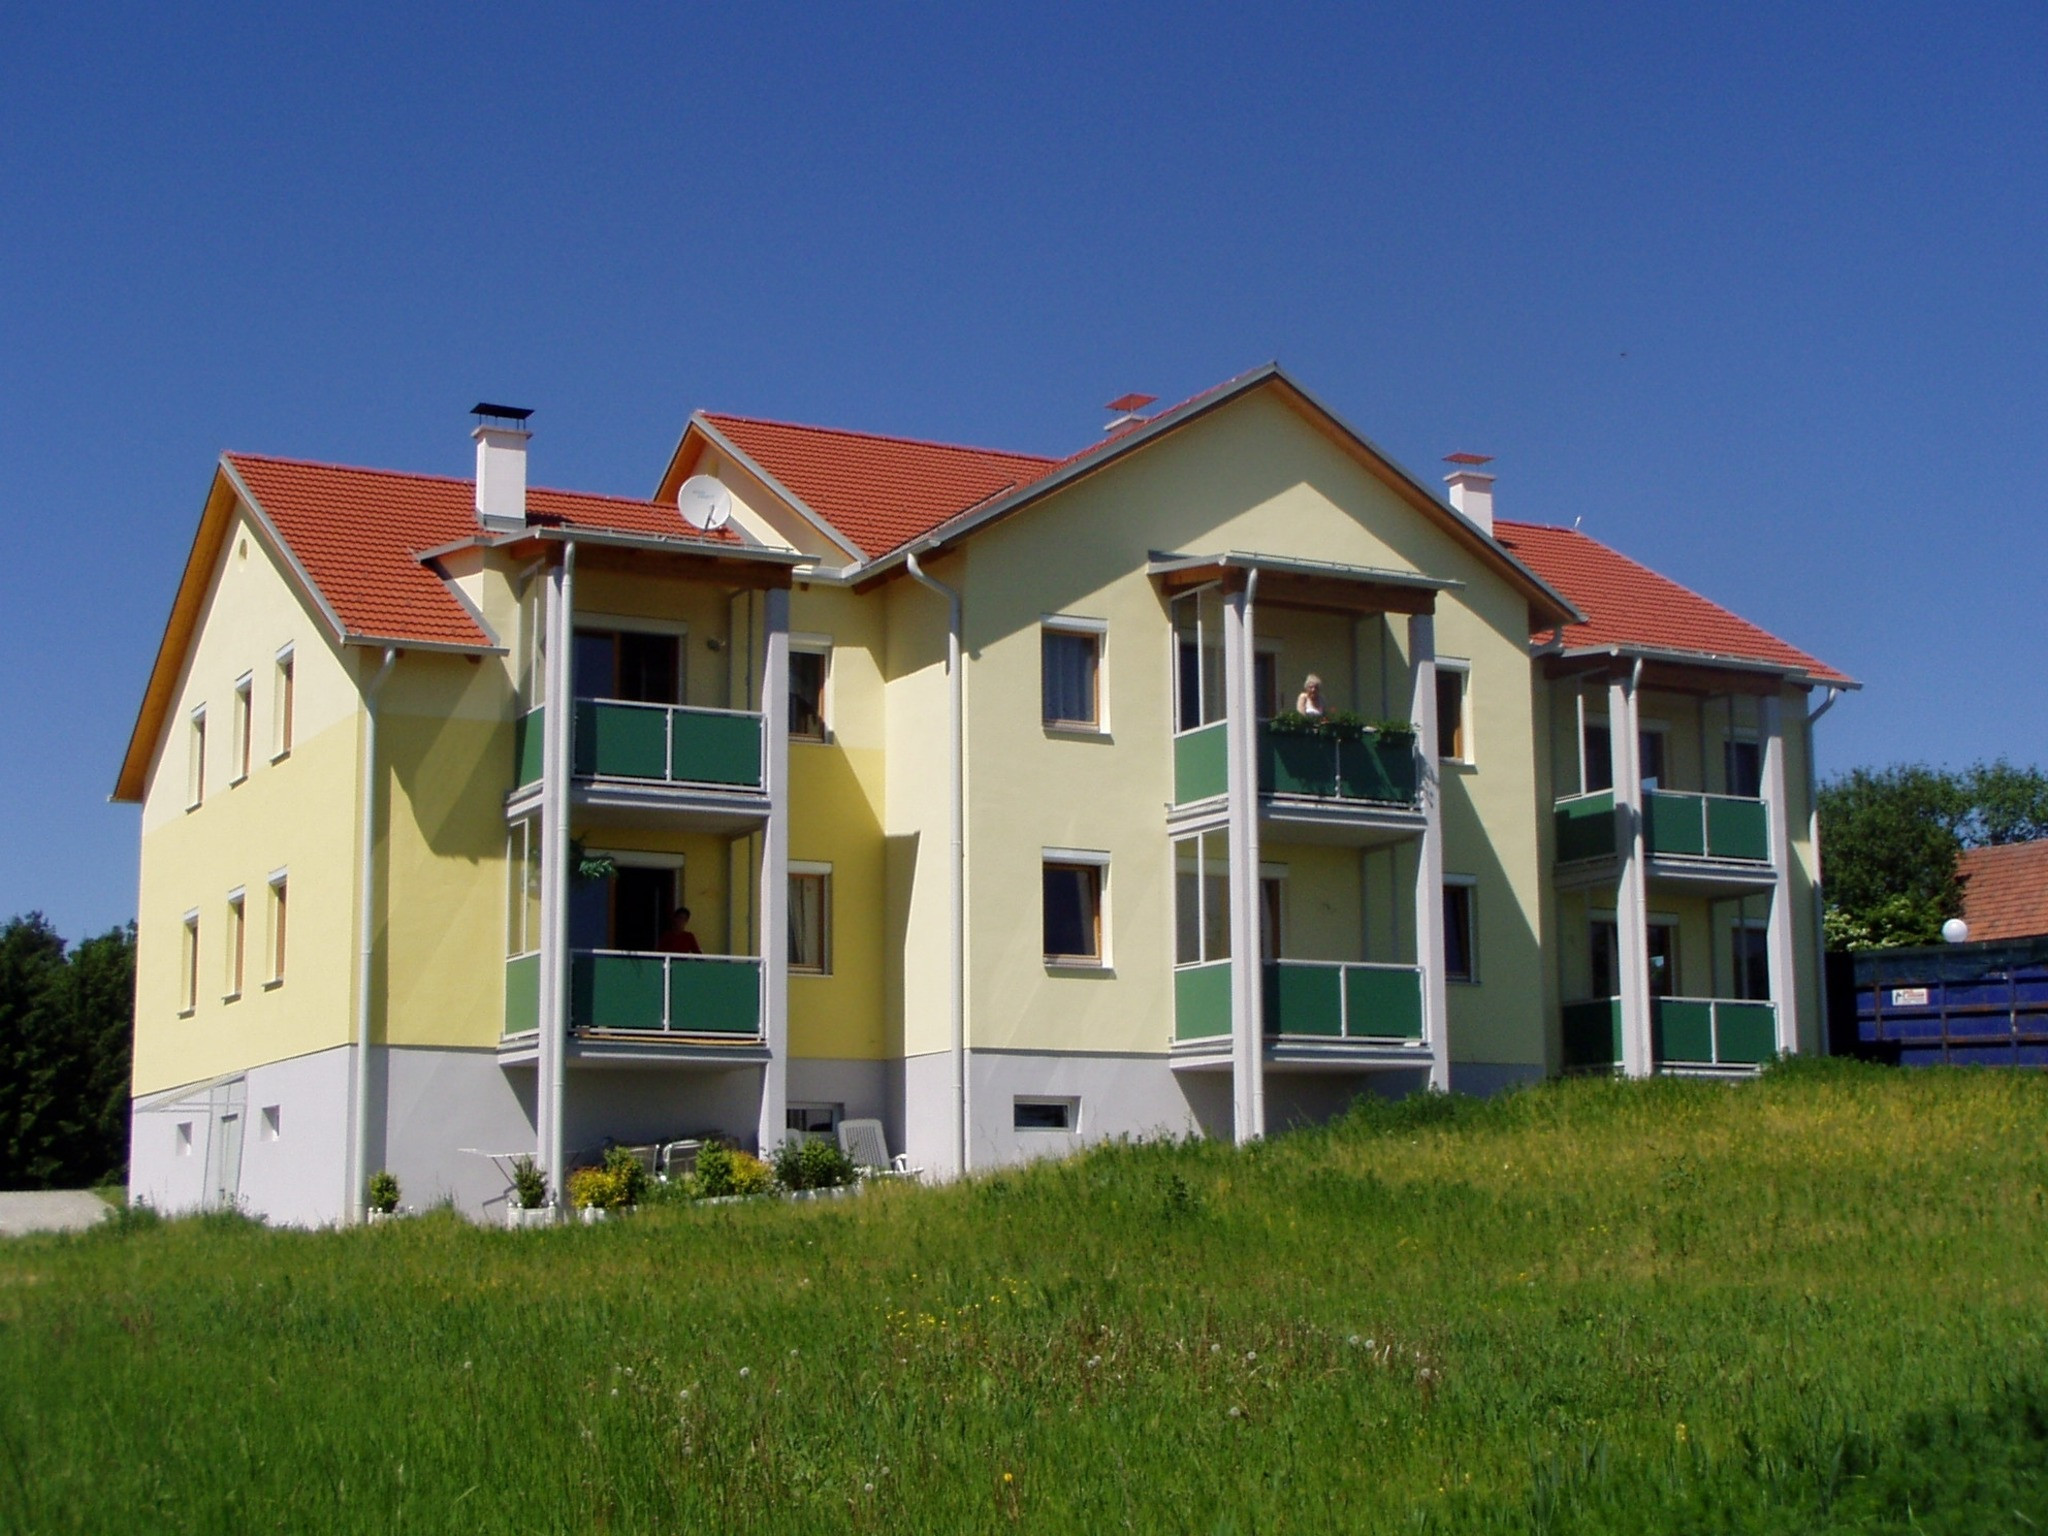 Freie Wohnungen
 Freie Wohnungen in Wörterberg Güssing